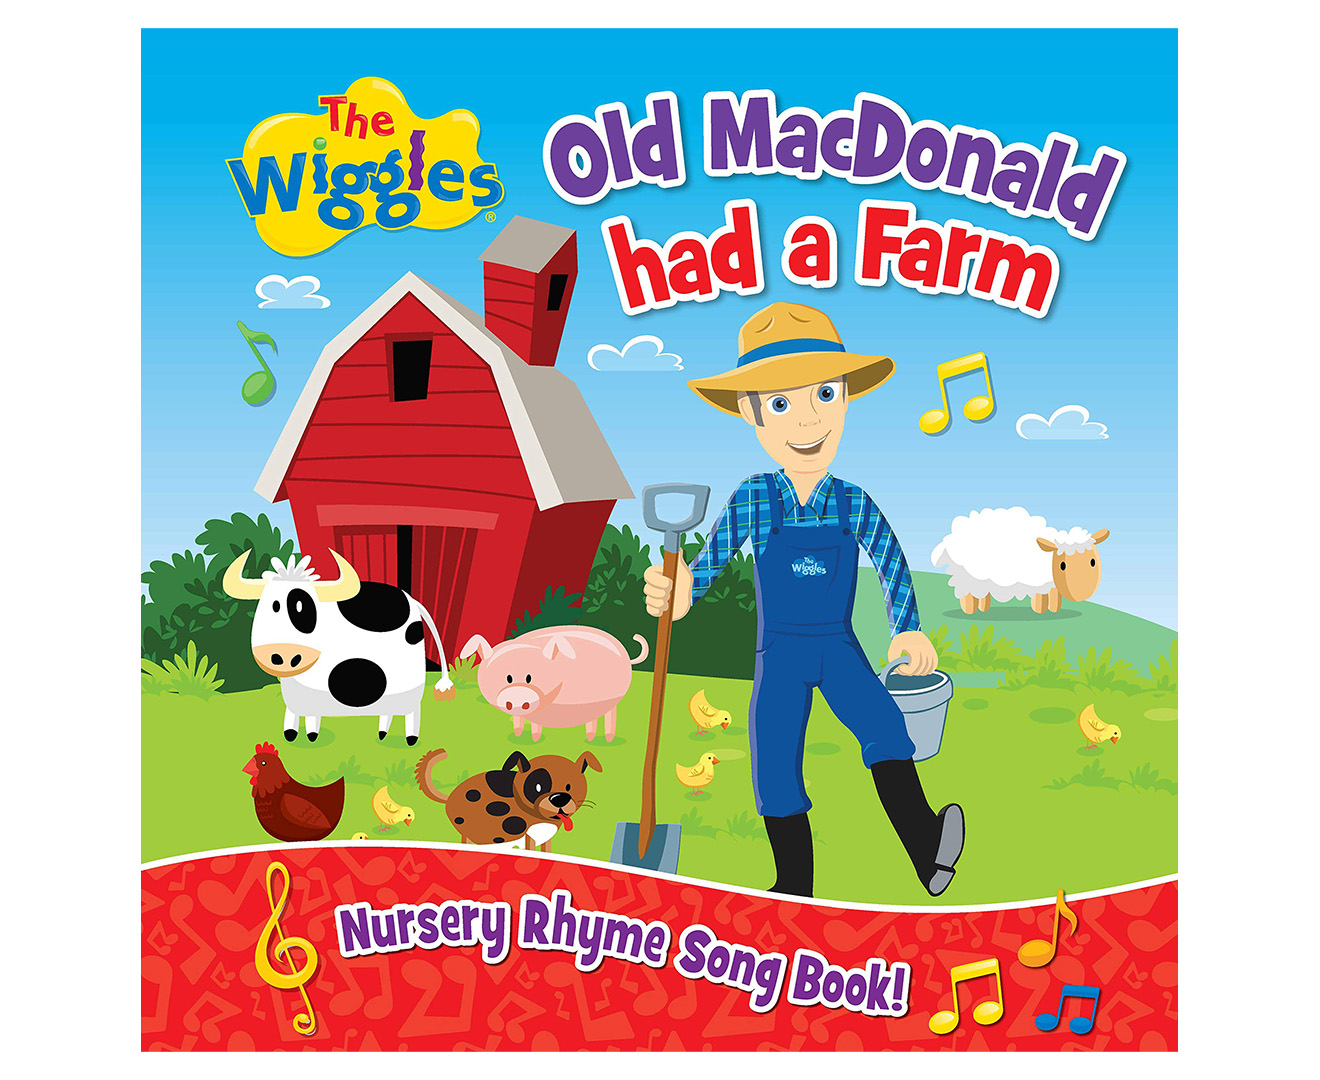 Wiggles old macdonald had a farm